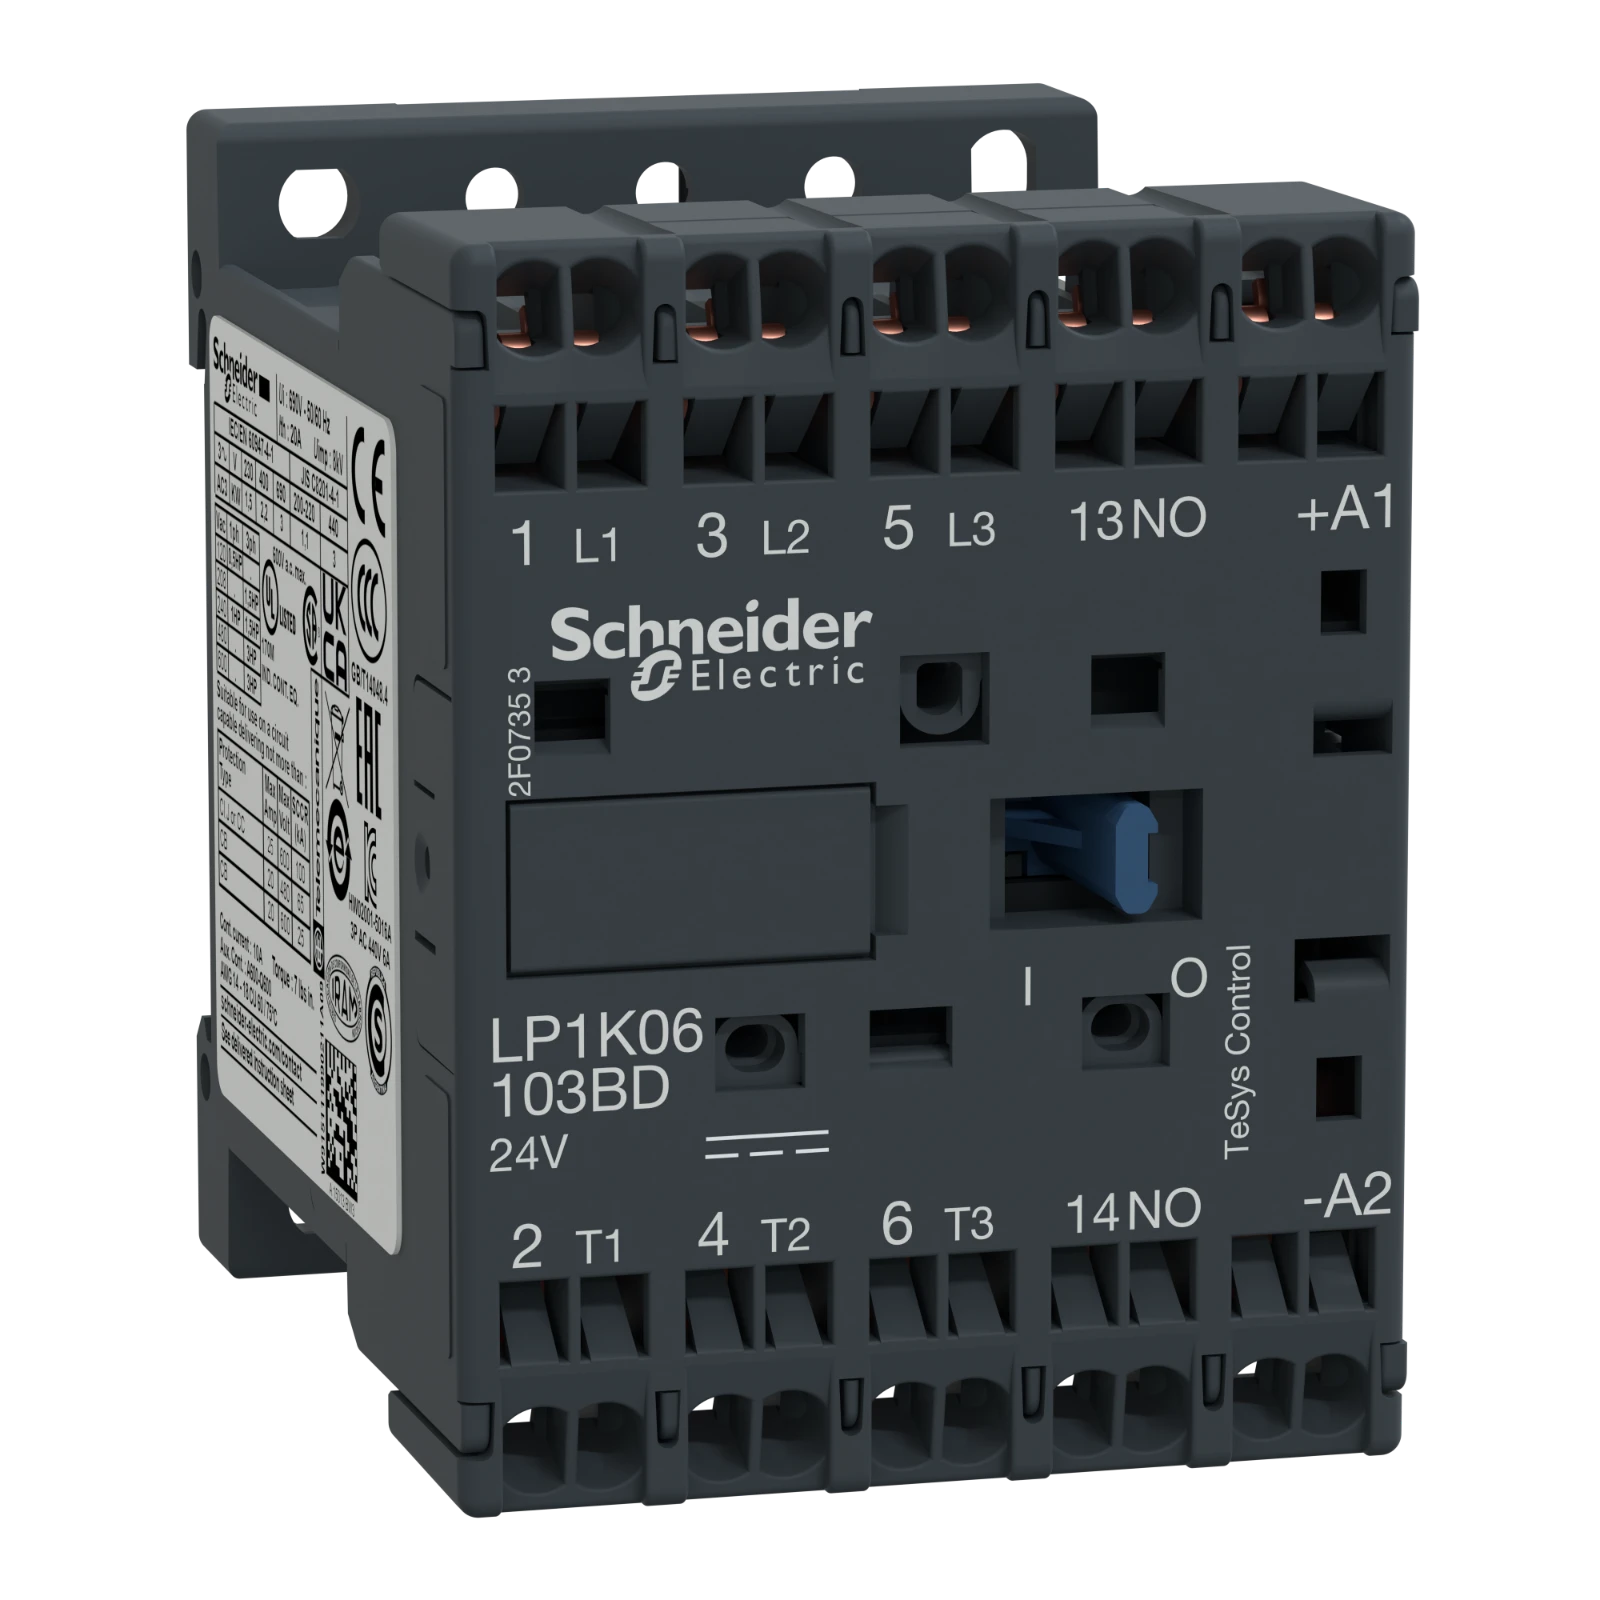 2339634 - Schneider Electric LP1K06103BD